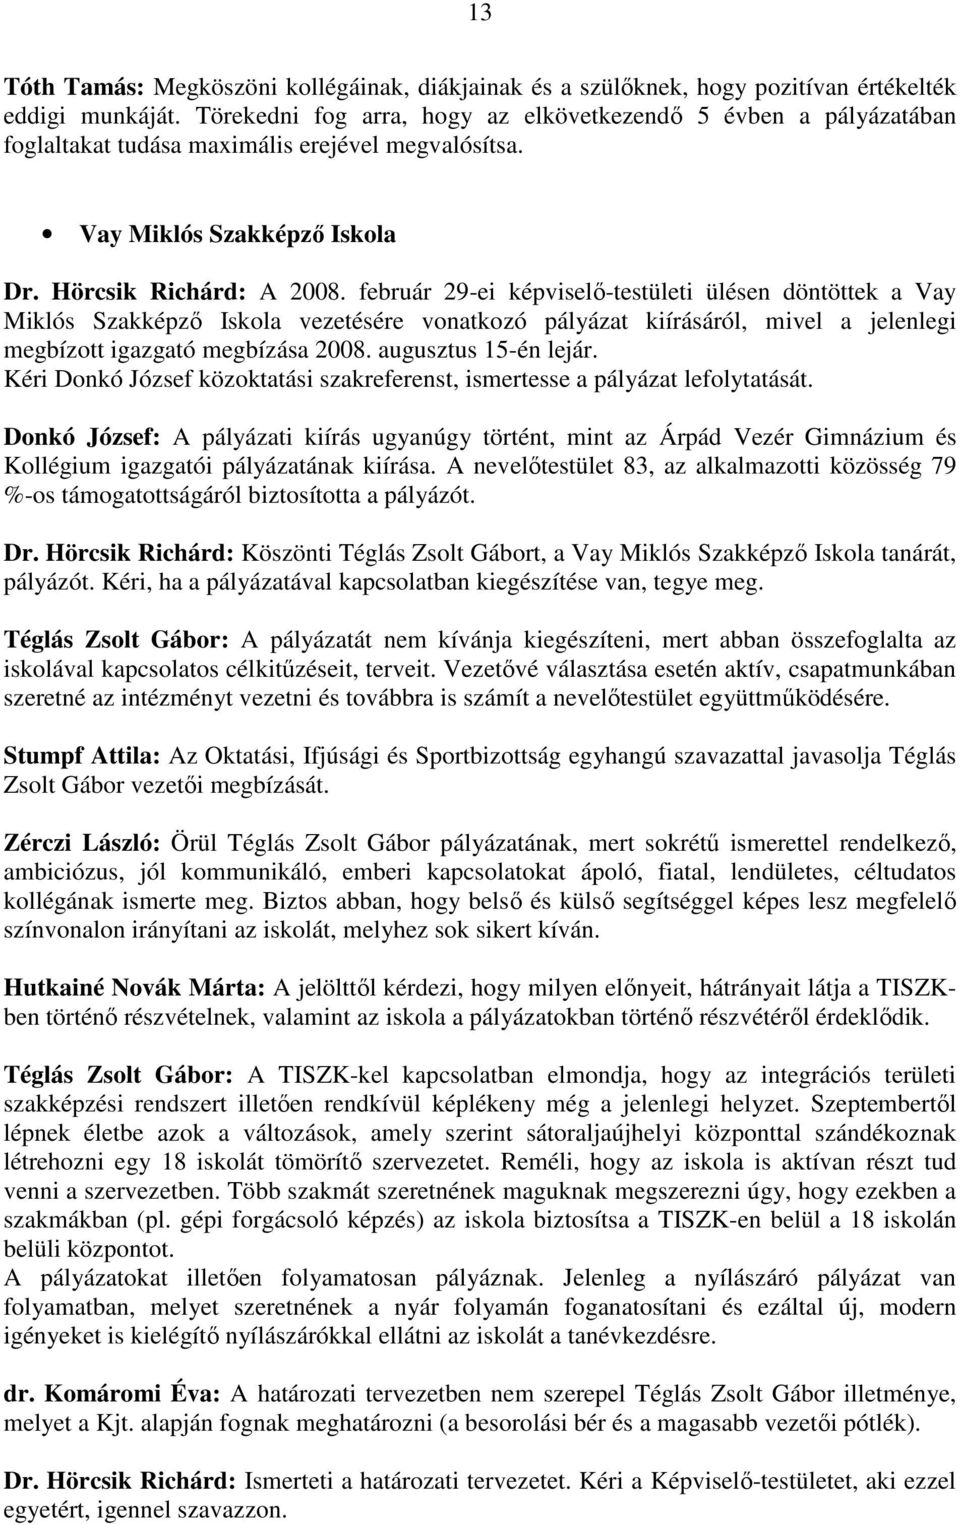 február 29-ei képviselı-testületi ülésen döntöttek a Vay Miklós Szakképzı Iskola vezetésére vonatkozó pályázat kiírásáról, mivel a jelenlegi megbízott igazgató megbízása 2008. augusztus 15-én lejár.